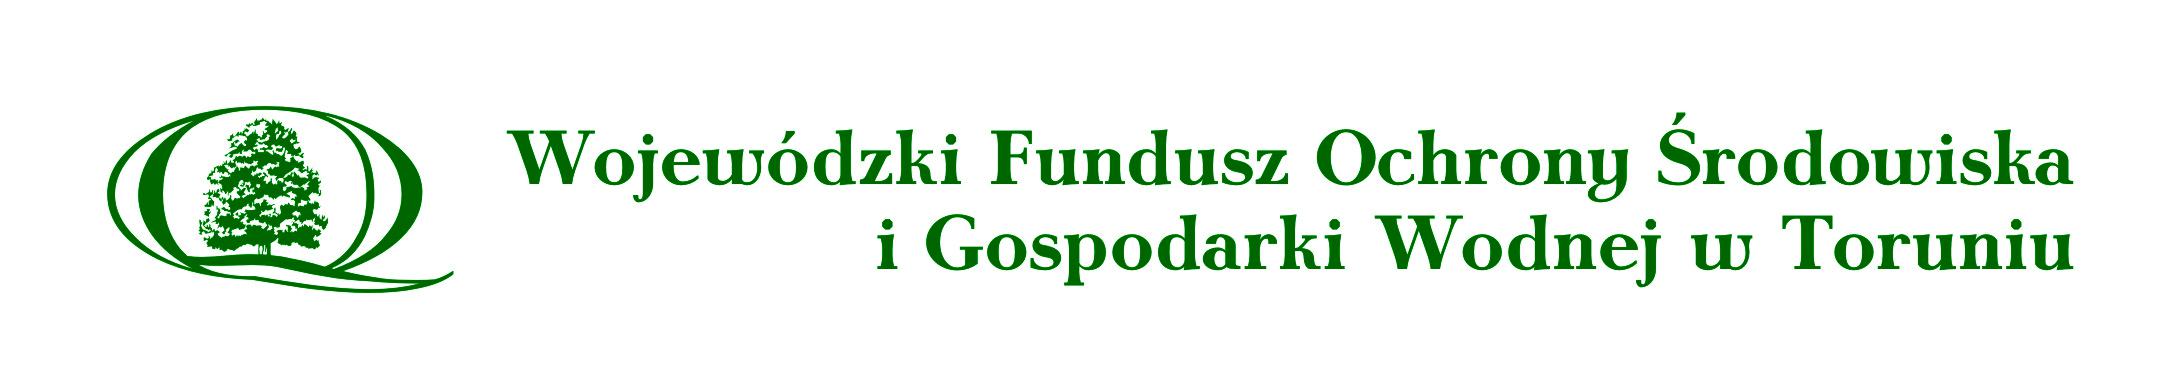 Wojewódzki Fundusz Ochrony Środowiska i Gospodarki Wodnej w Toruniu